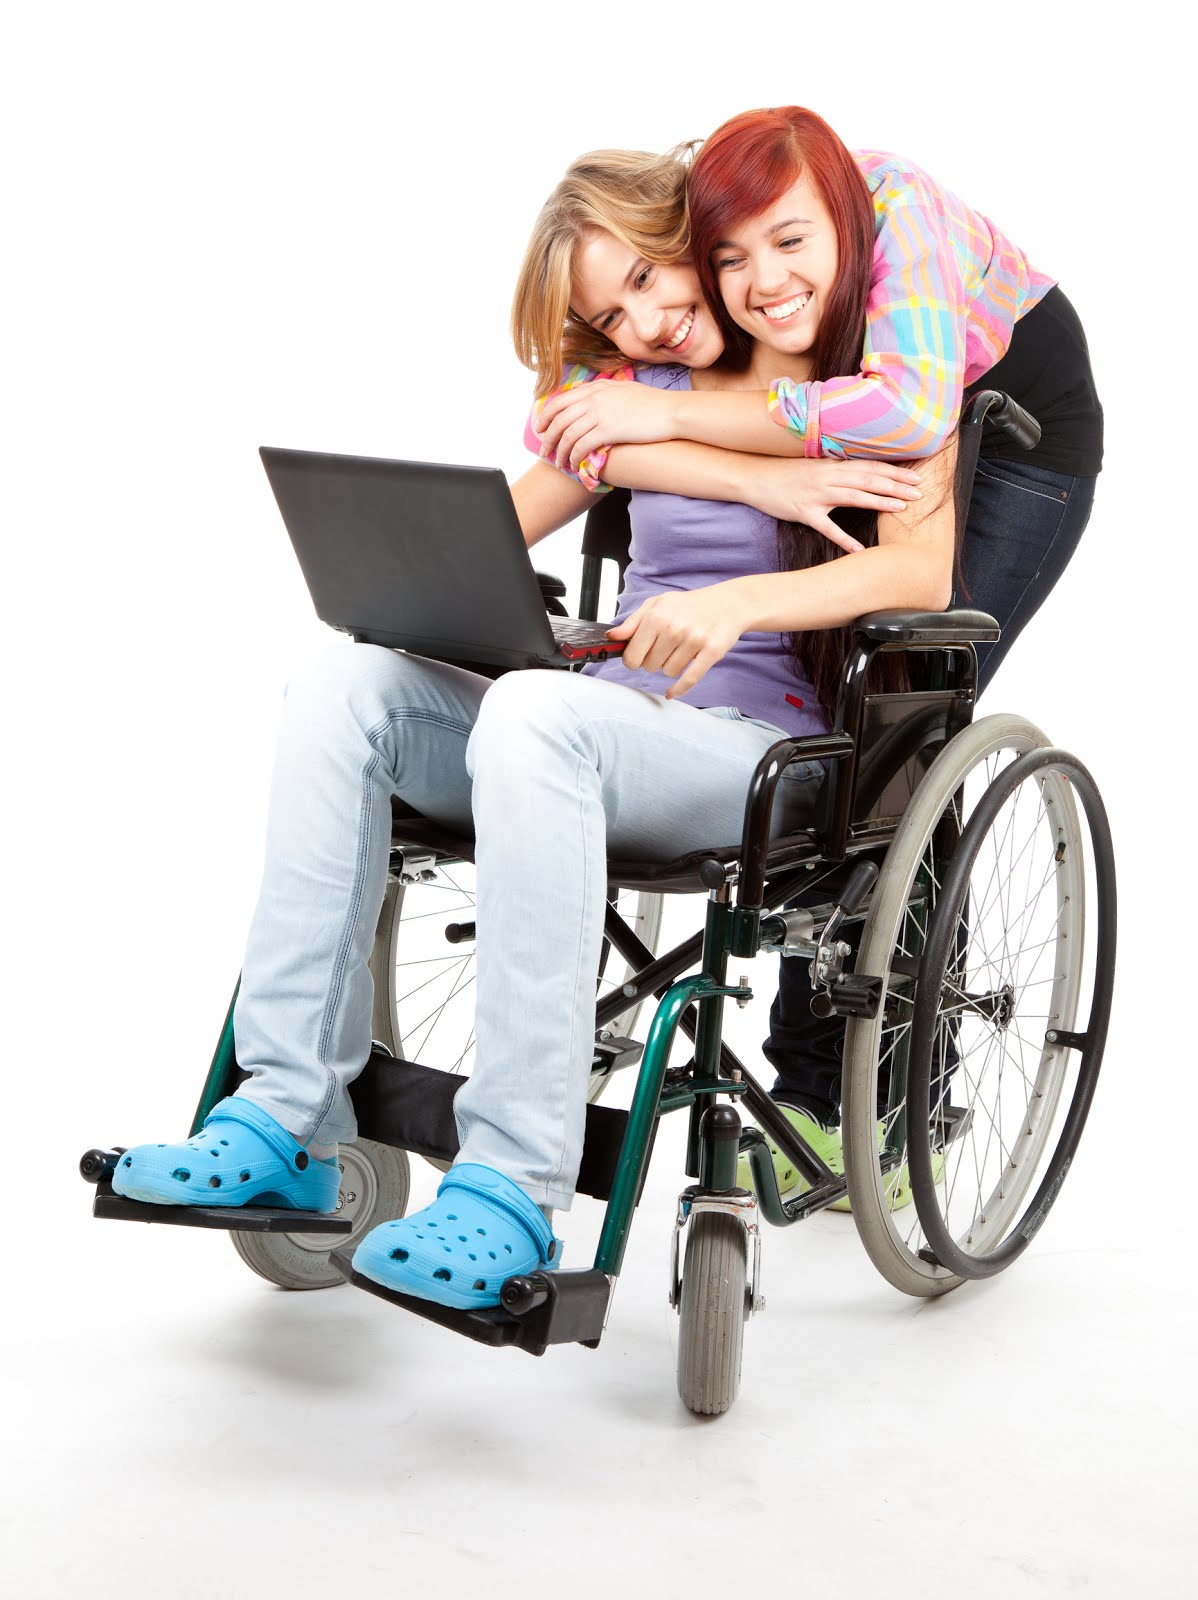 Ребенок инвалид командировка. Дети инвалиды. Семья с ребенком инвалидом. Ребенок в инвалидной коляске. Мамы на инвалидных колясках.